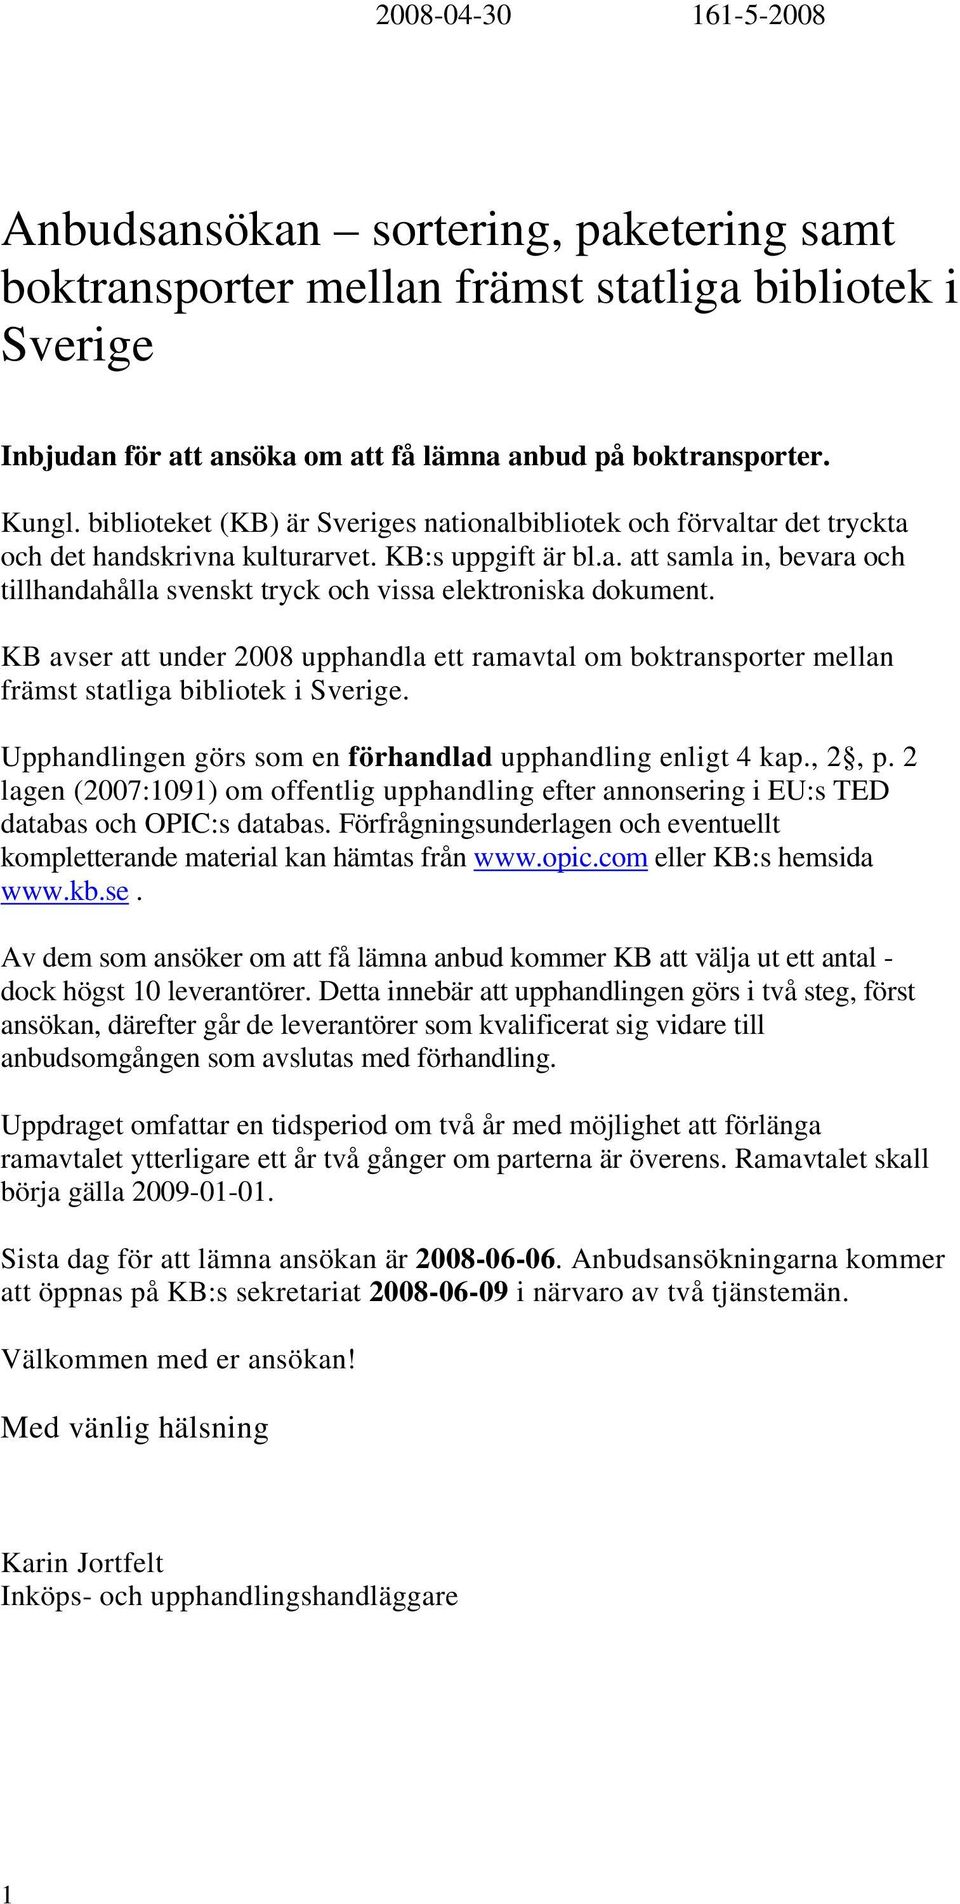 KB avser att under 2008 upphandla ett ramavtal om boktransporter mellan främst statliga bibliotek i Sverige. Upphandlingen görs som en förhandlad upphandling enligt 4 kap., 2, p.